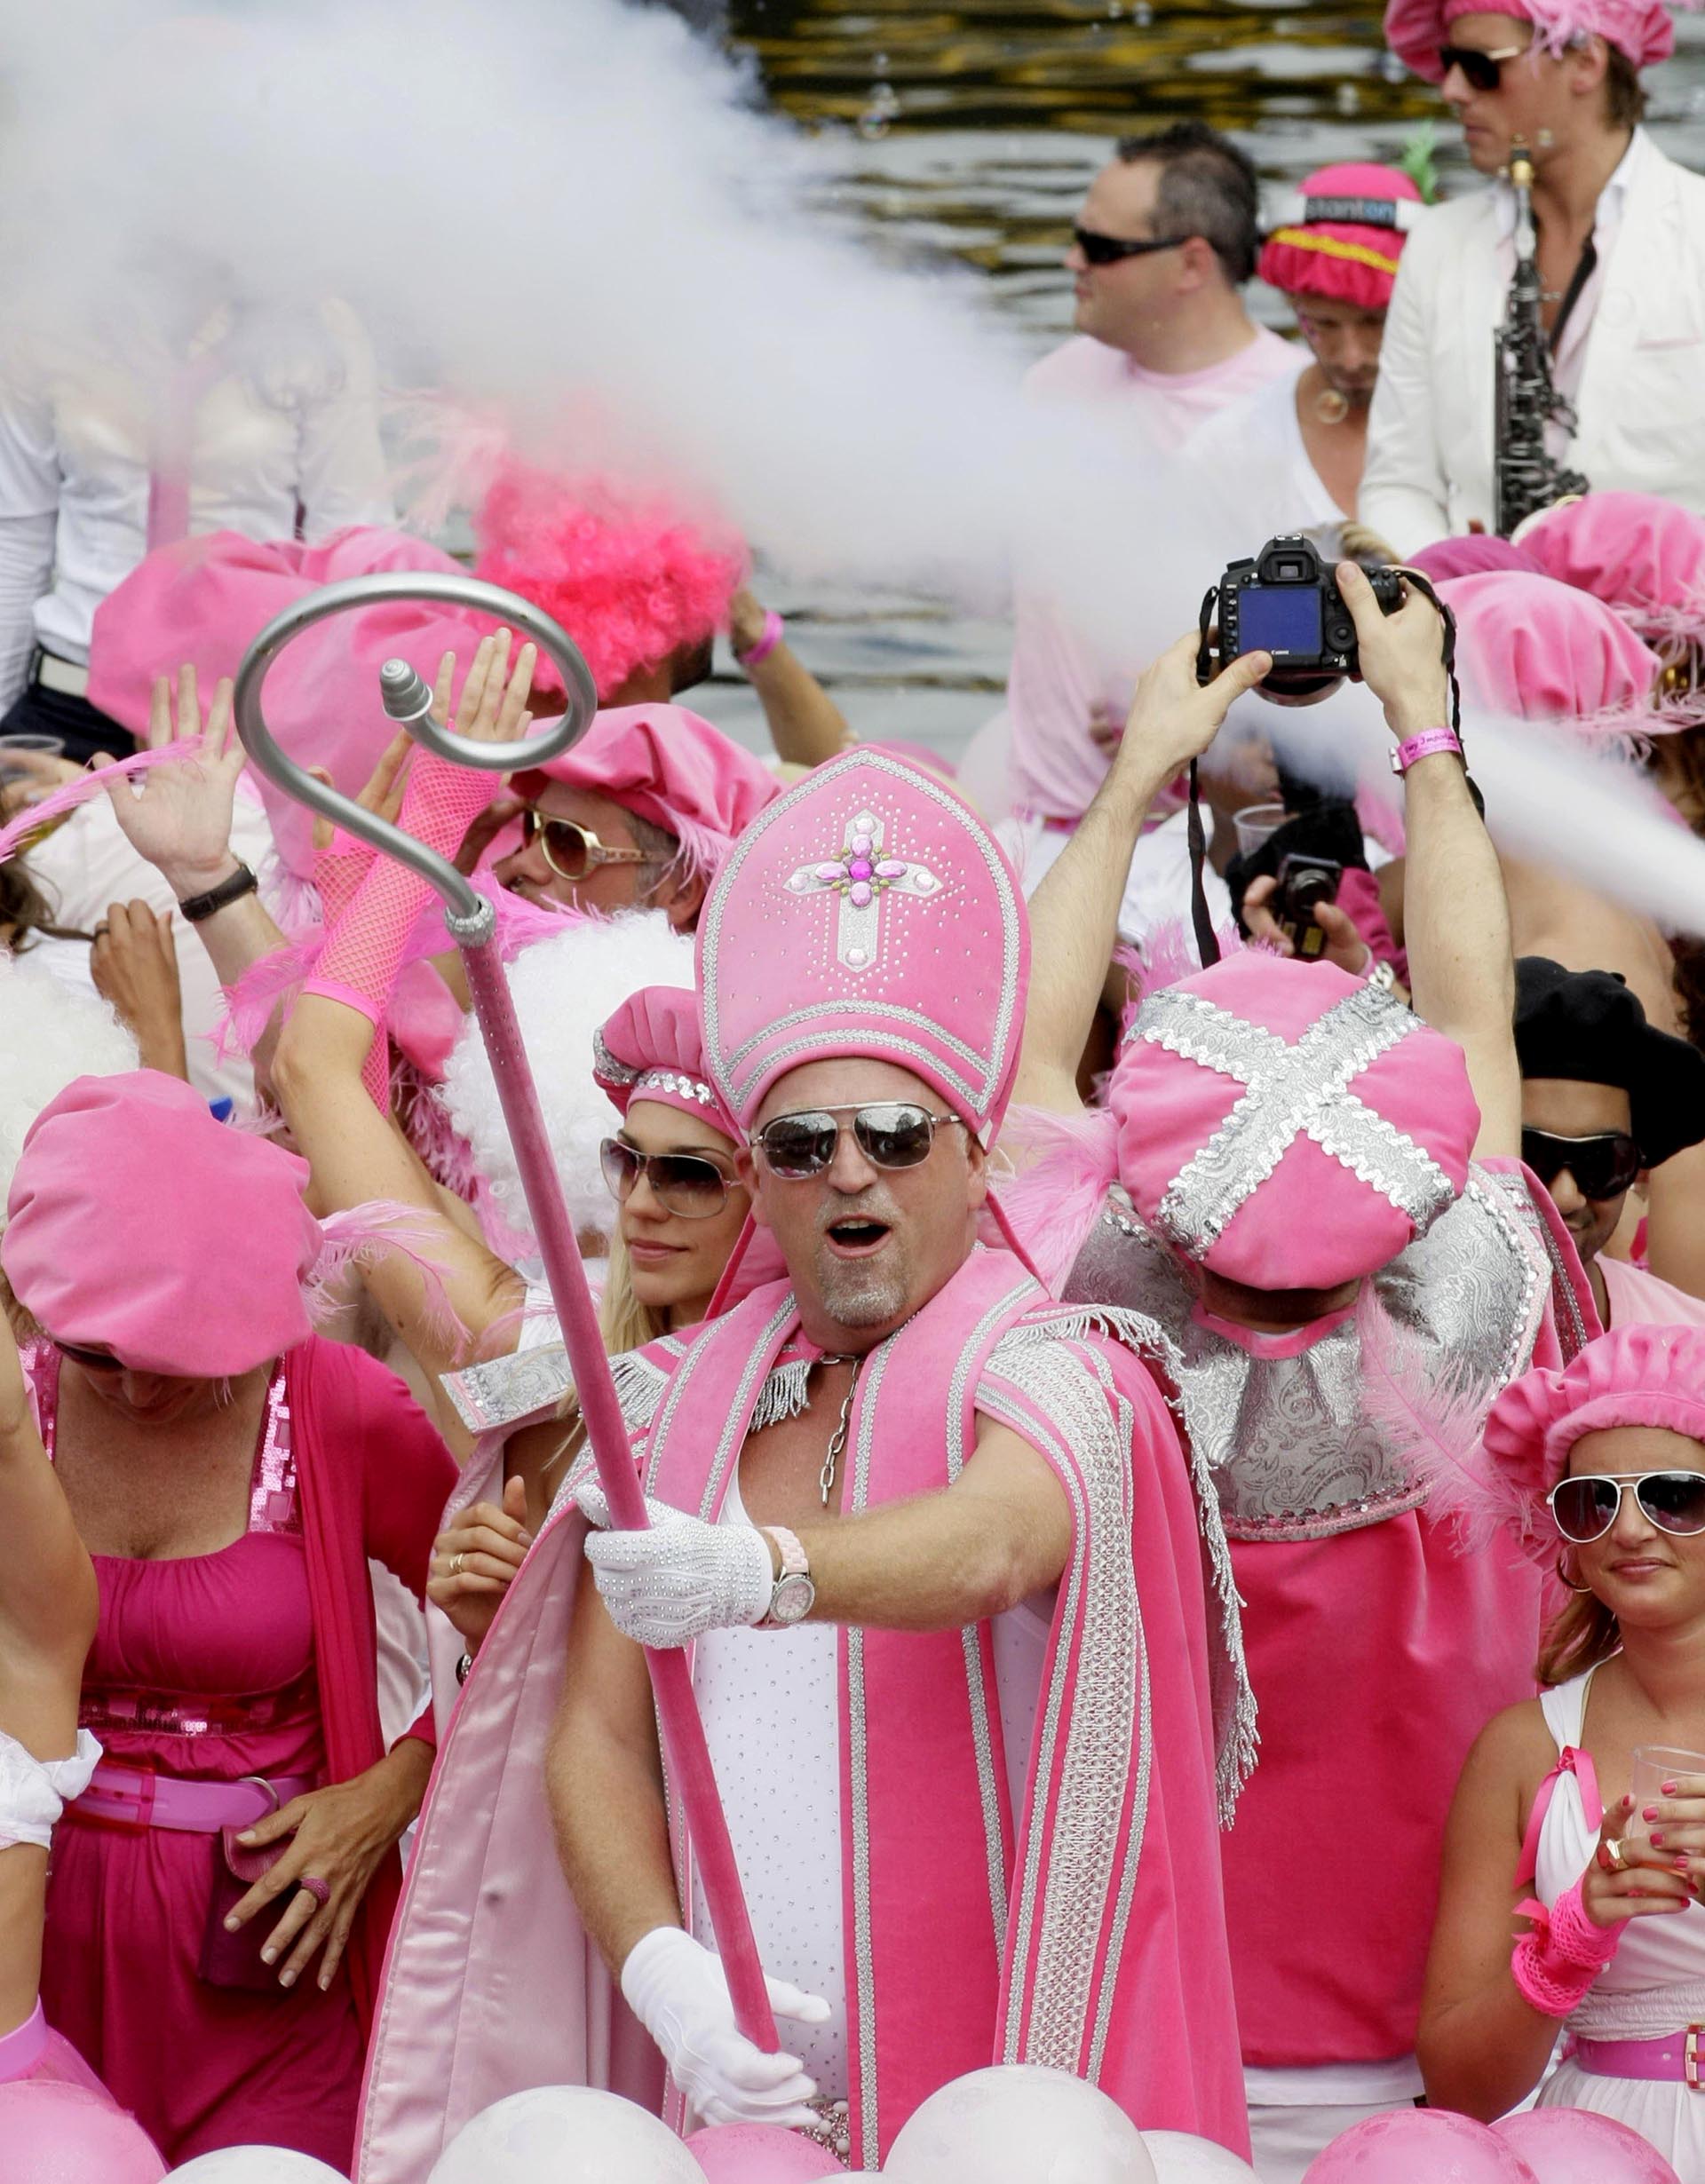 Vestidos con trajes religiosos rosados, los participantes del Desfile del Canal son fotografiados en Amsterdam el 1 de agosto de 2009 